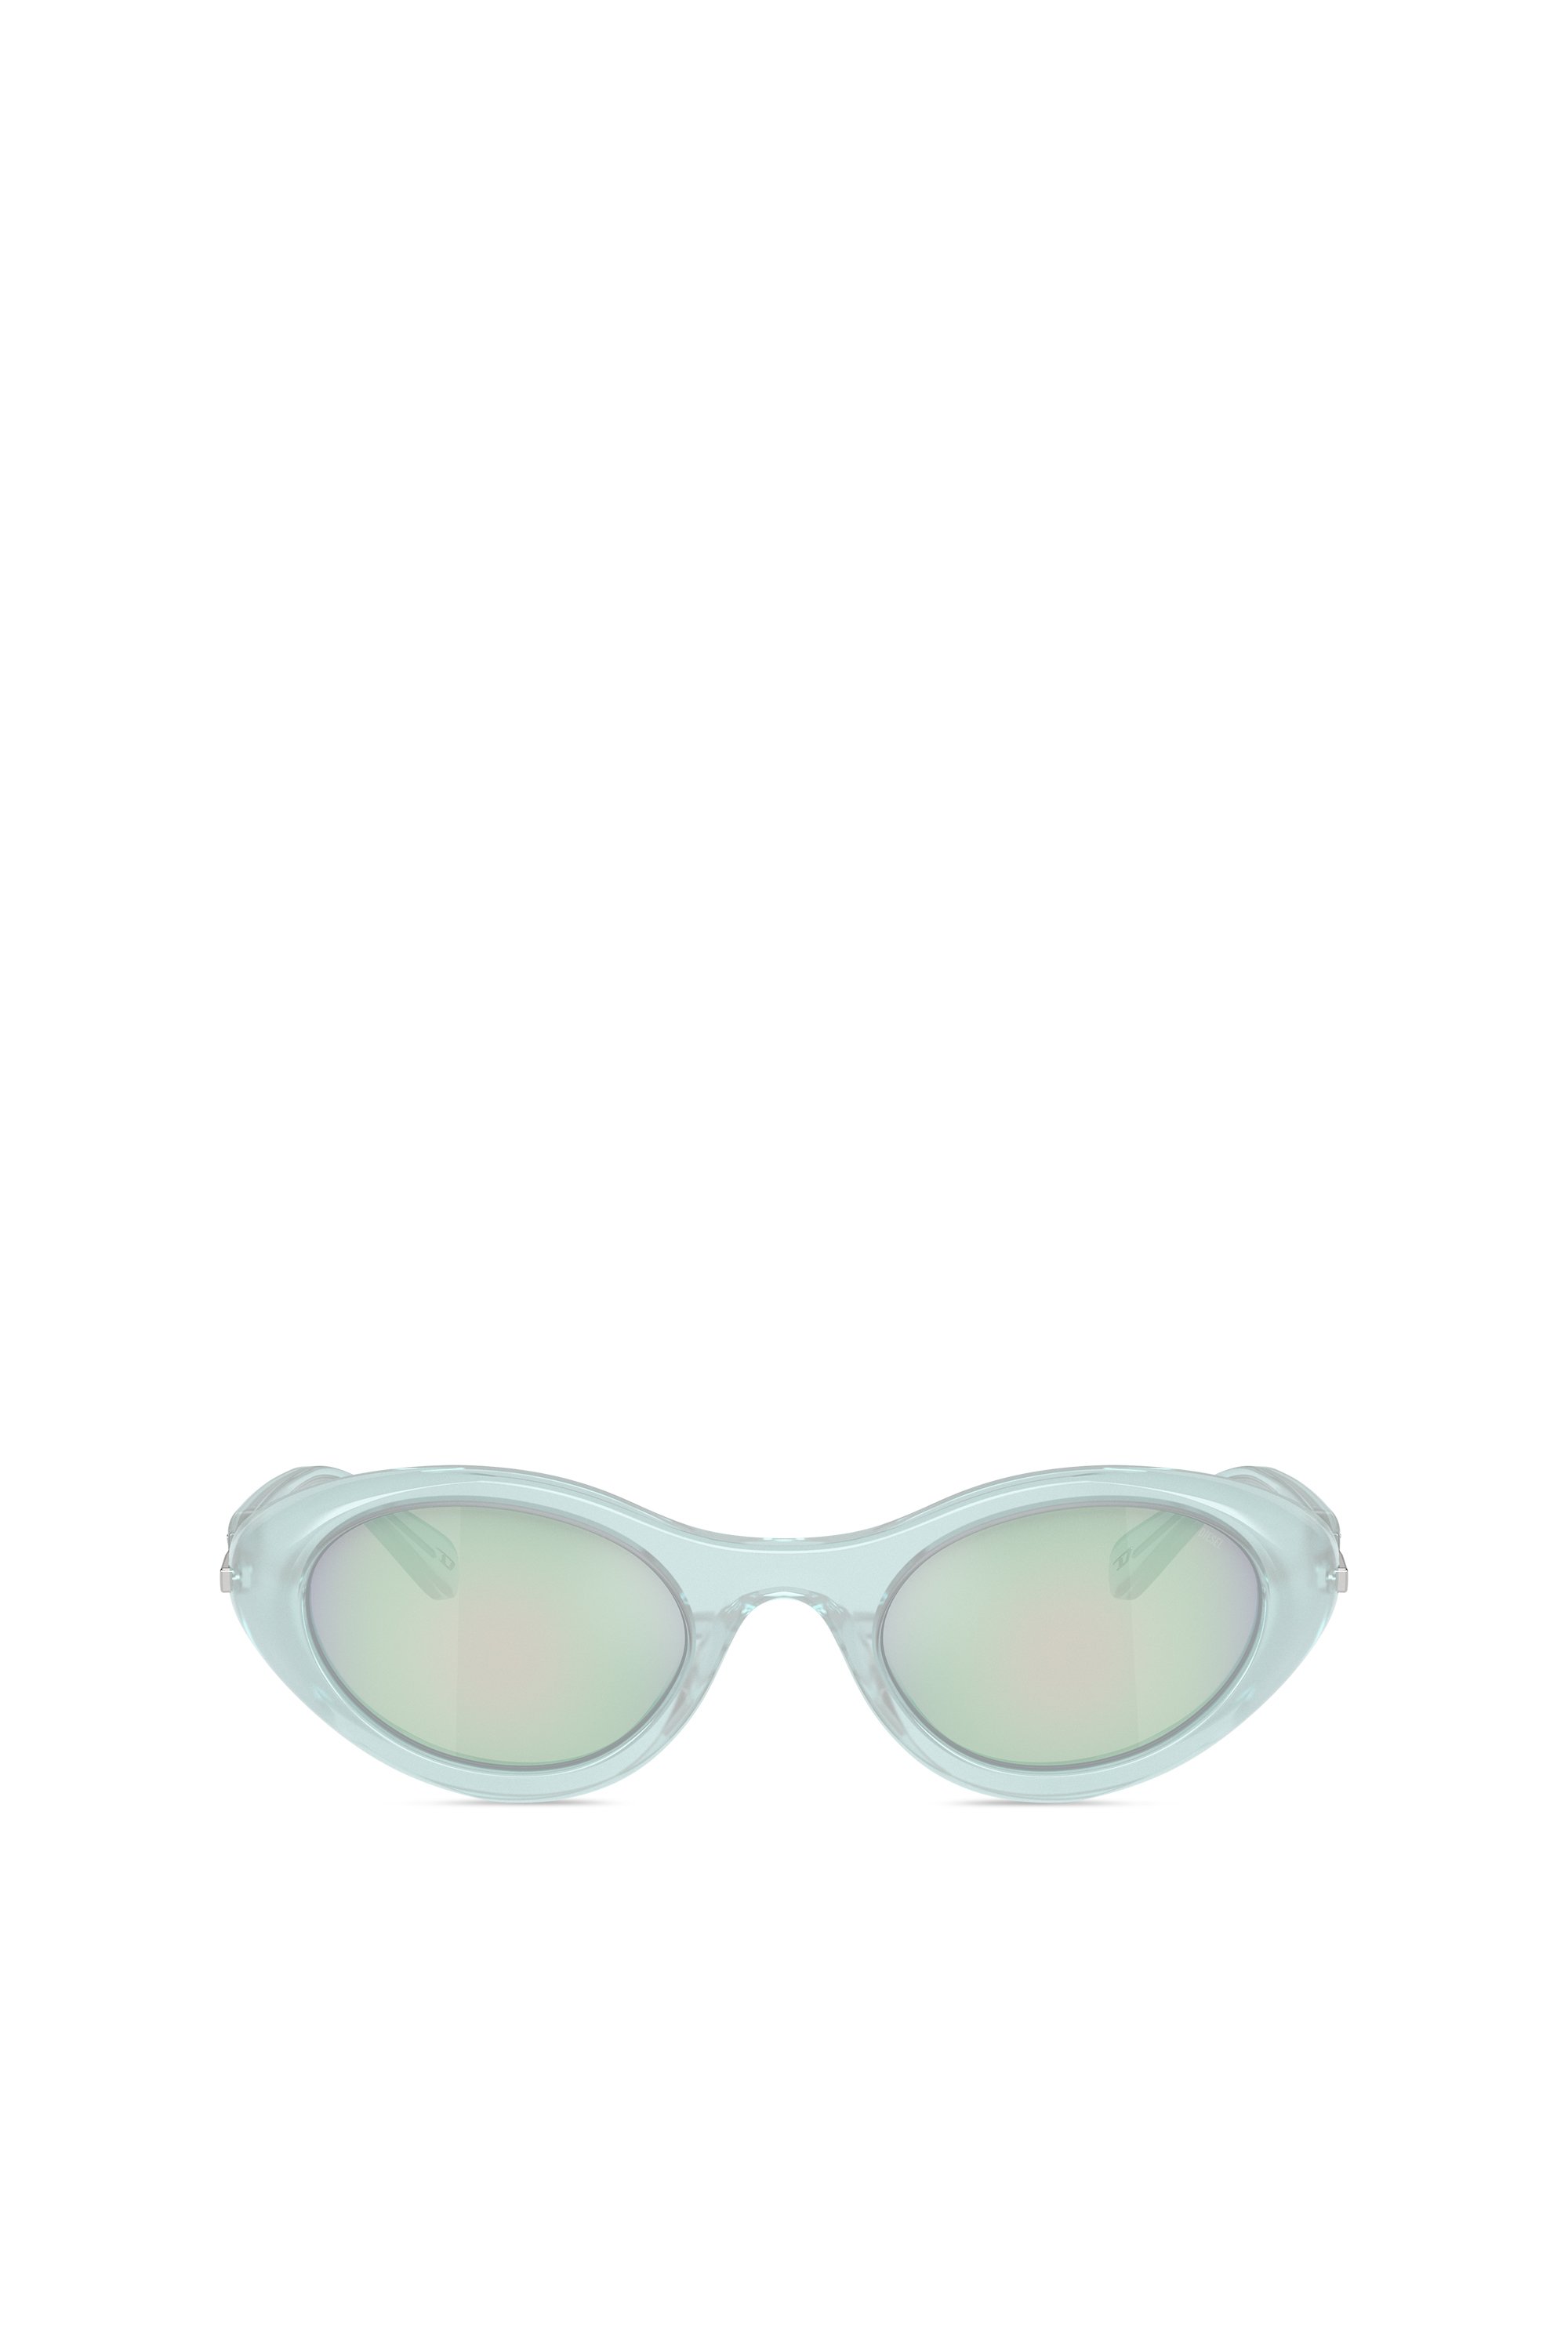 Diesel - Sonnenbrille in Wrap-Around-Form - Sonnenbrille - Unisex - Blau